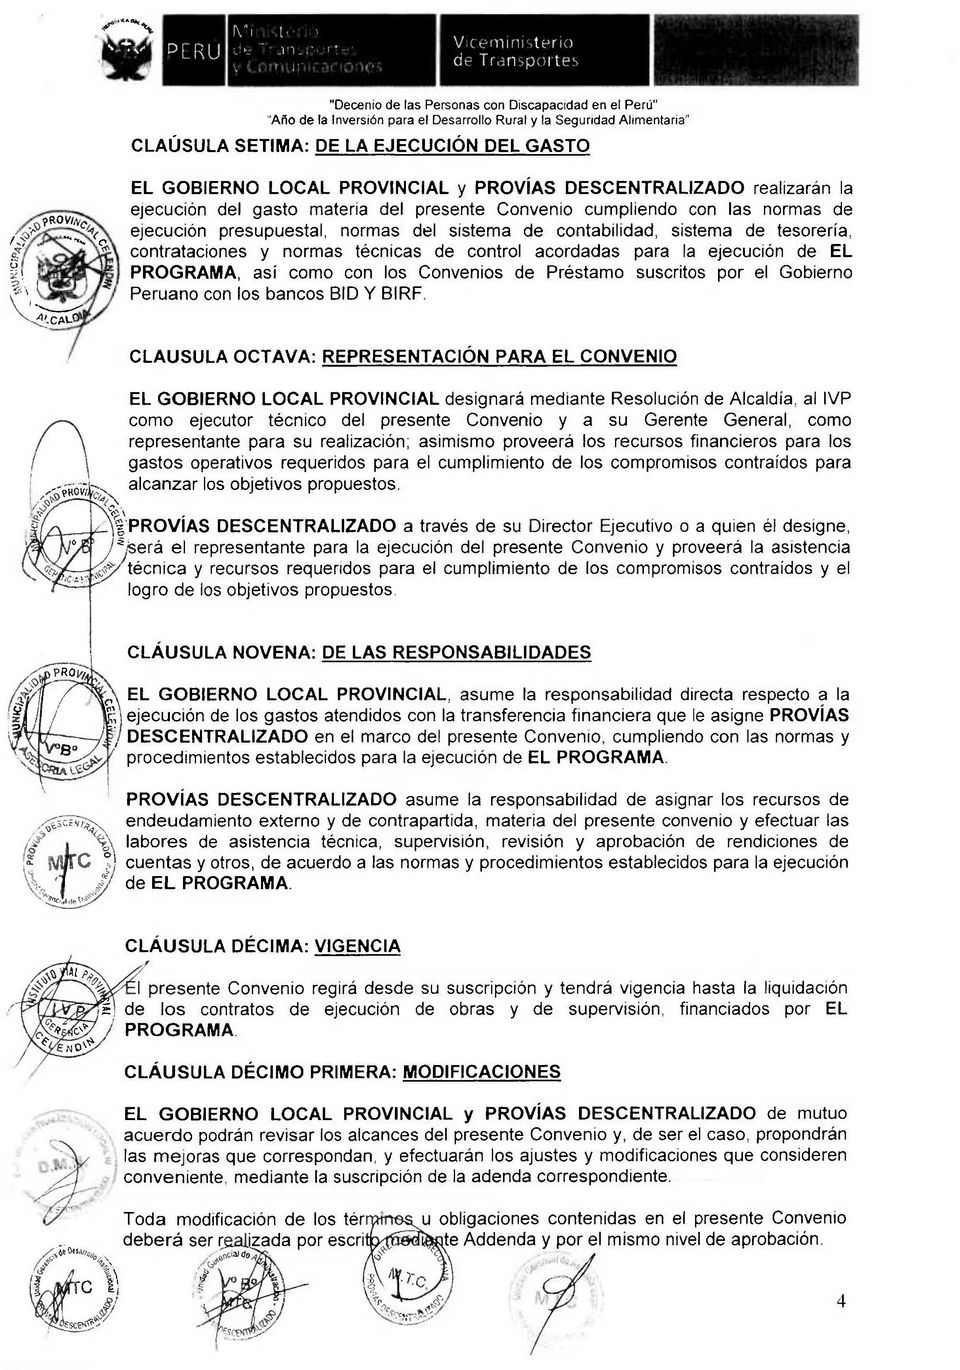 Convenios de Préstamo suscritos por el Gobierno Peruano con los bancos BID Y BIRF.